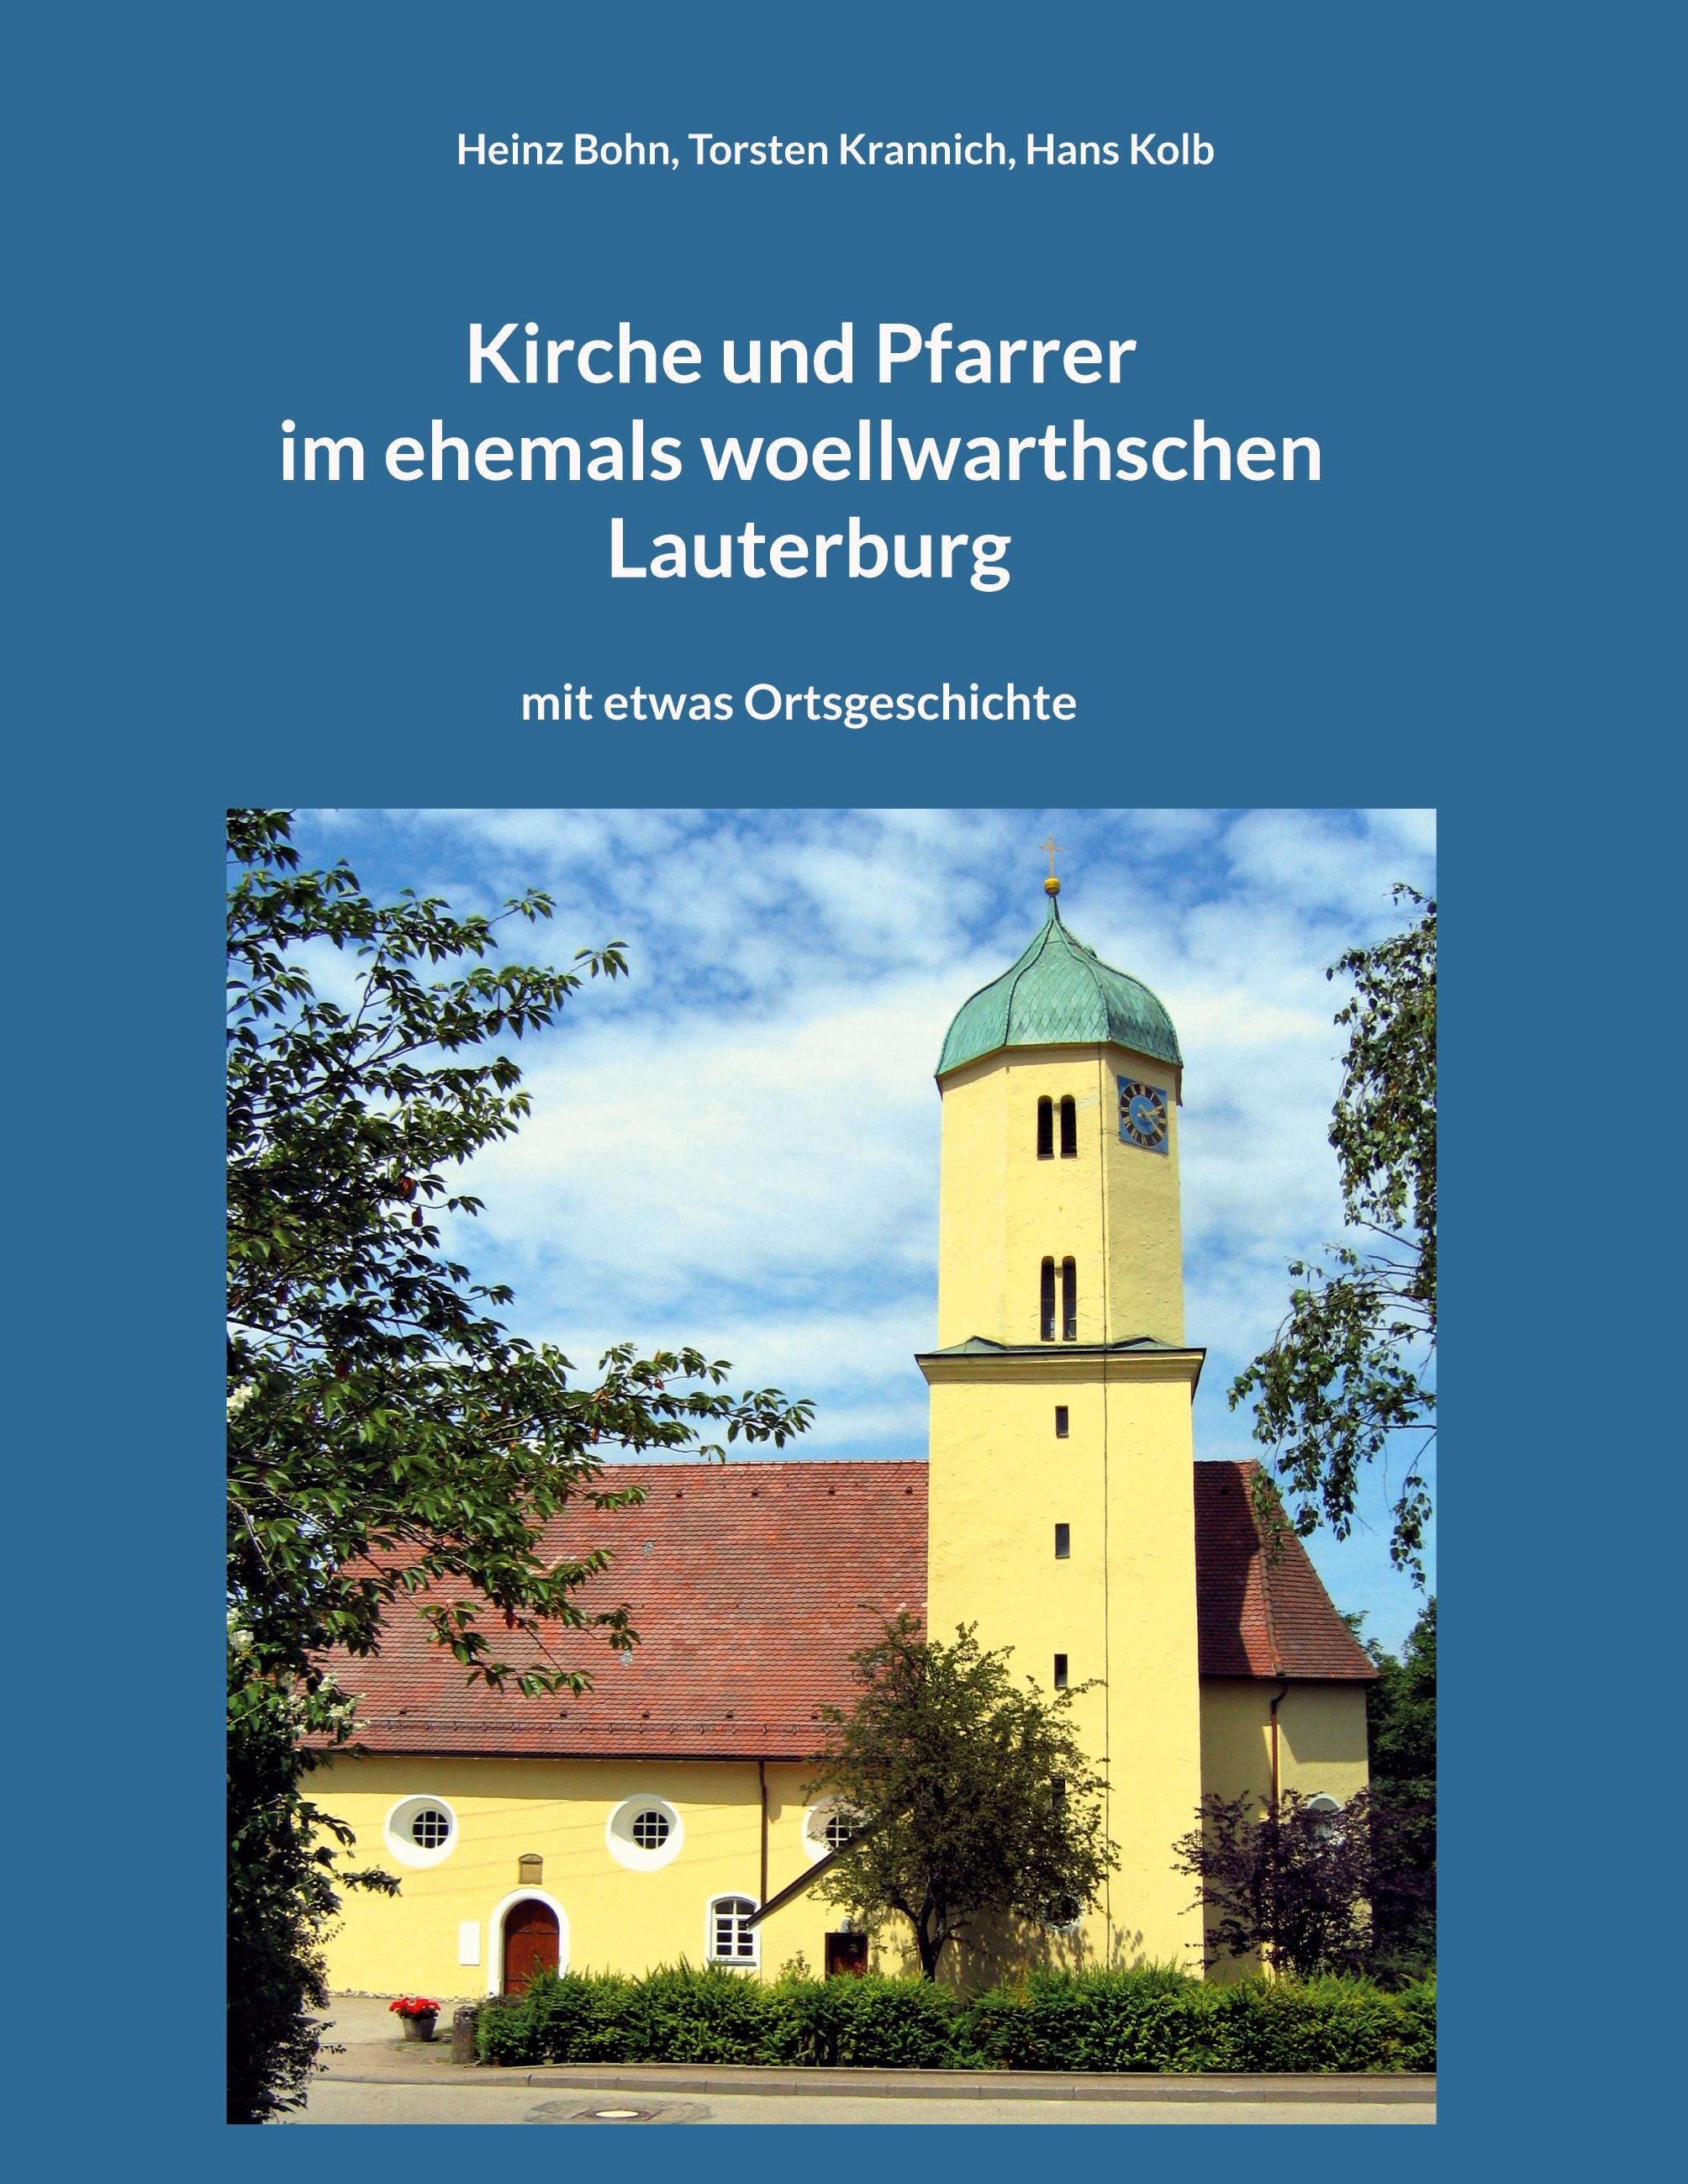 Kirche und Pfarrer im ehemals woellwarthschen Lauterburg - Bohn, Heinz|Krannich, Torsten|Kolb, Hans